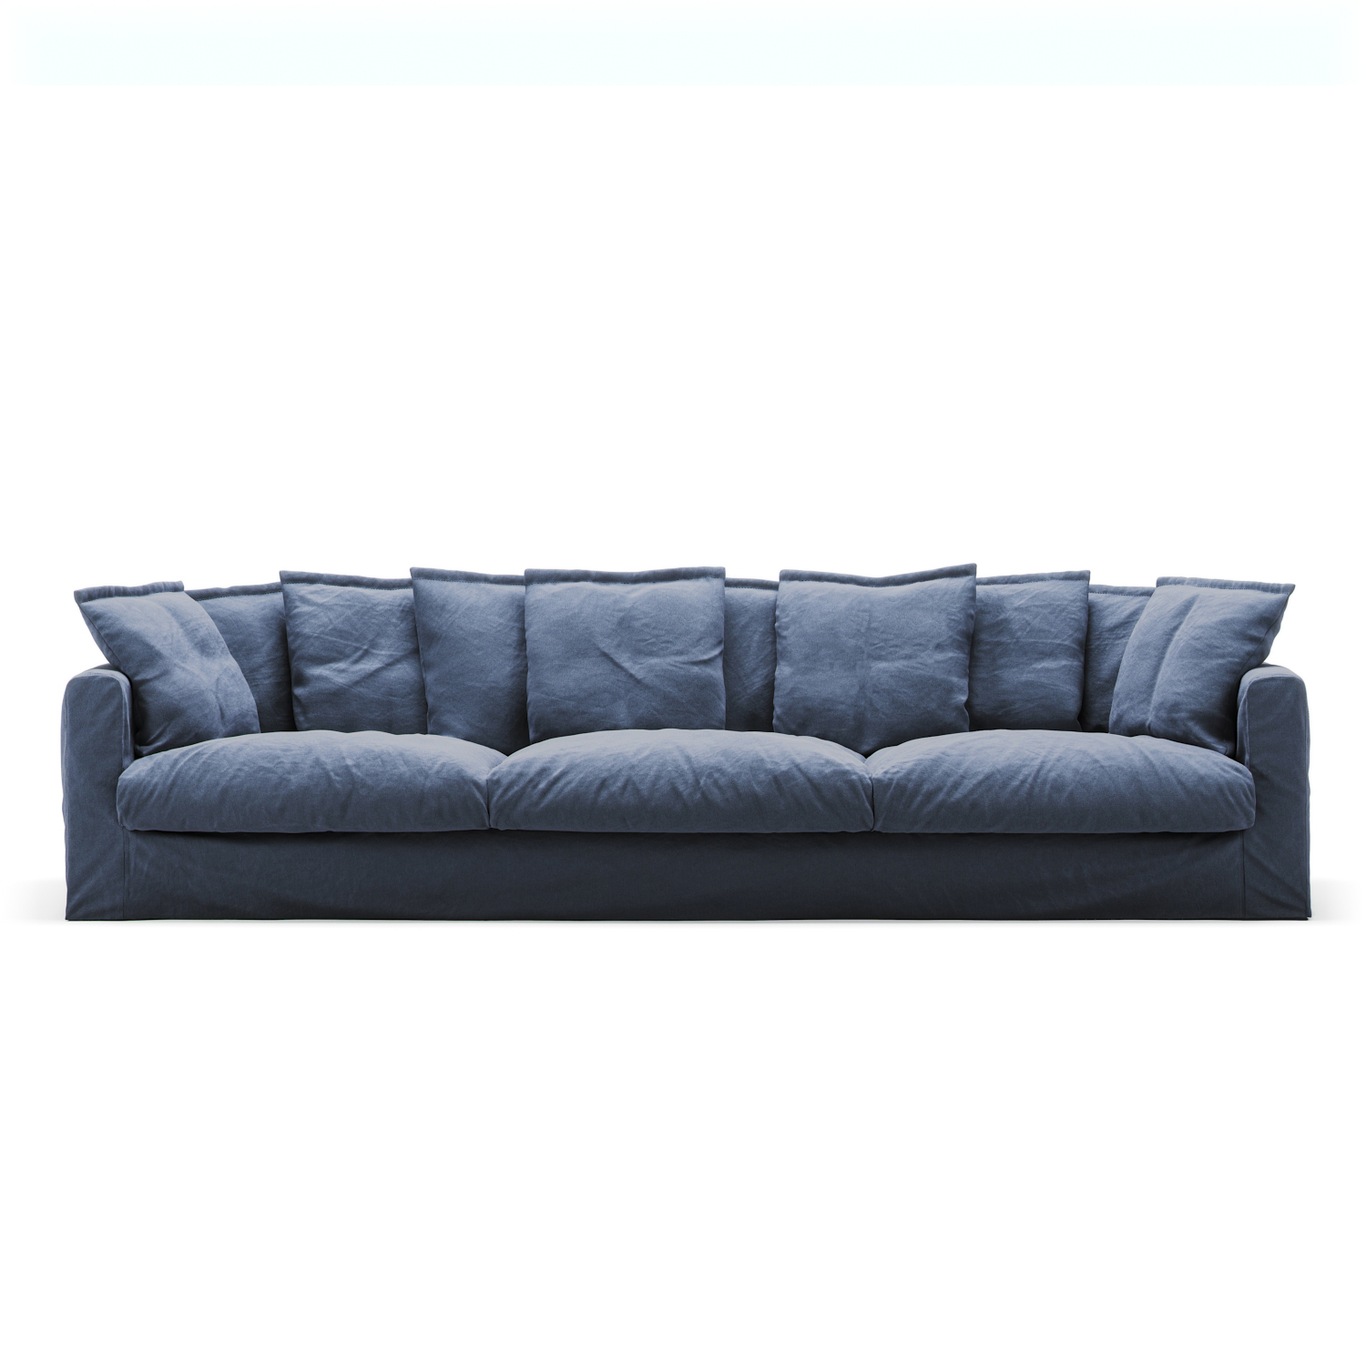 Le Grand Air Sofa 5-Sitzer Baumwolle, Dunkelblau